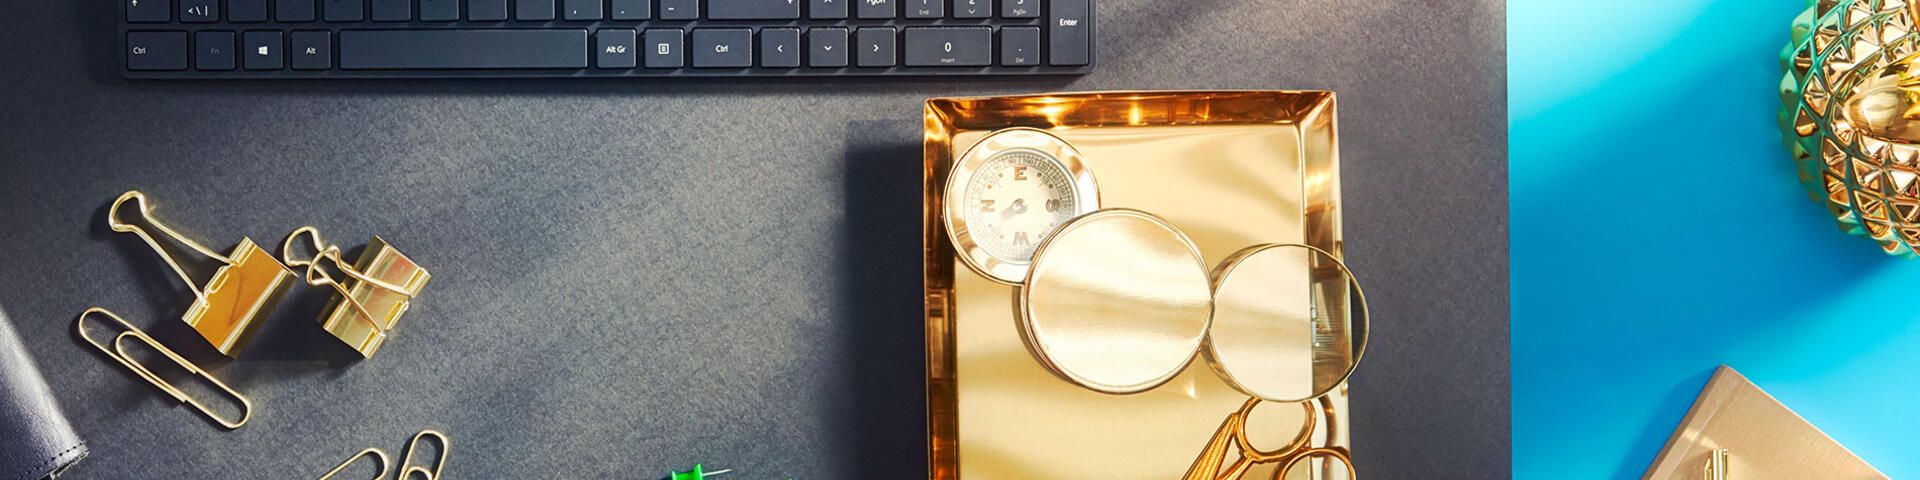 Ett skrivbord som innehåller ovanligt många föremål i guld, som illustrerar allt om din lön